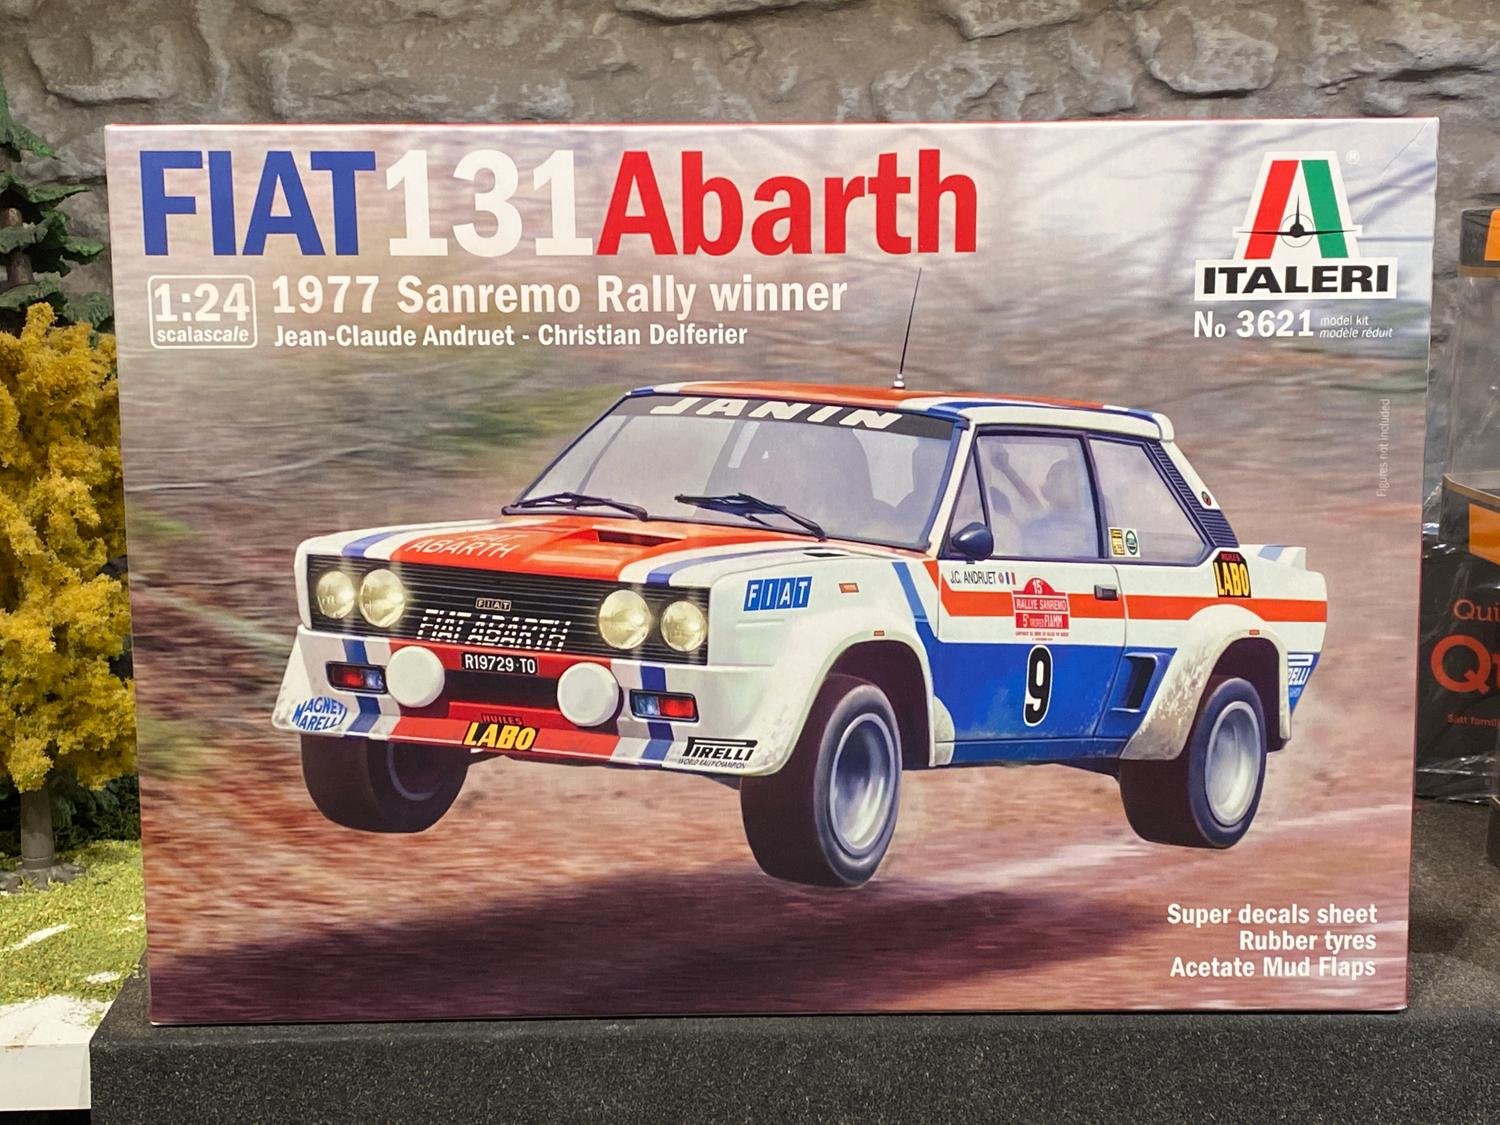 Skala 1/24 Fiat 131 Abarth Sanremo winner 1977 från ITALERI